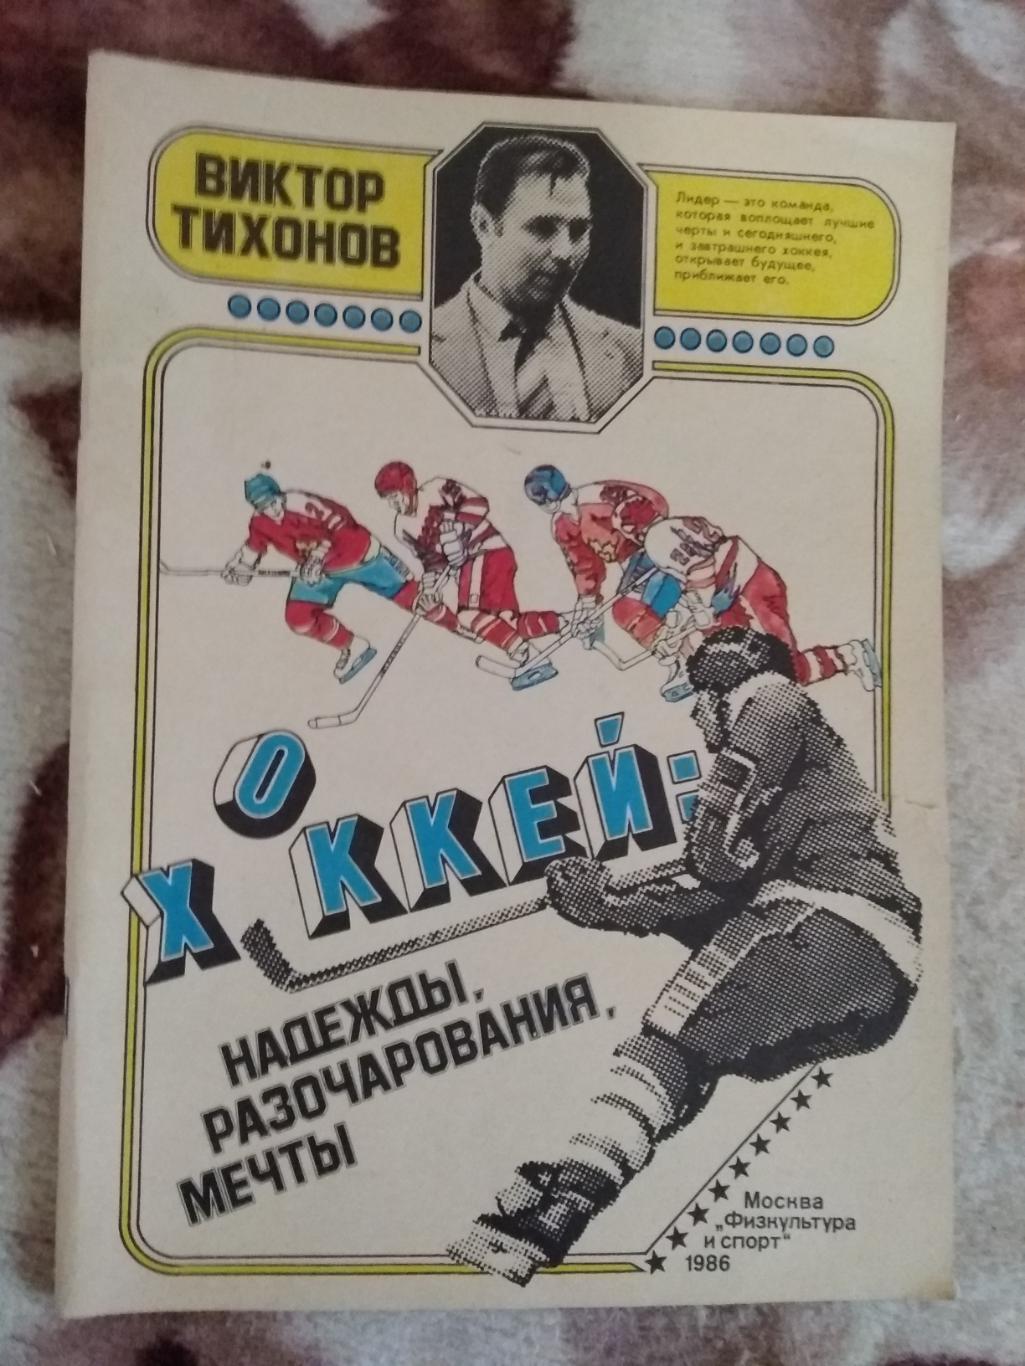 В.Тихонов.Хоккей:надежды,раз очерования,мечты.2- изд.ФиС 1986 г.